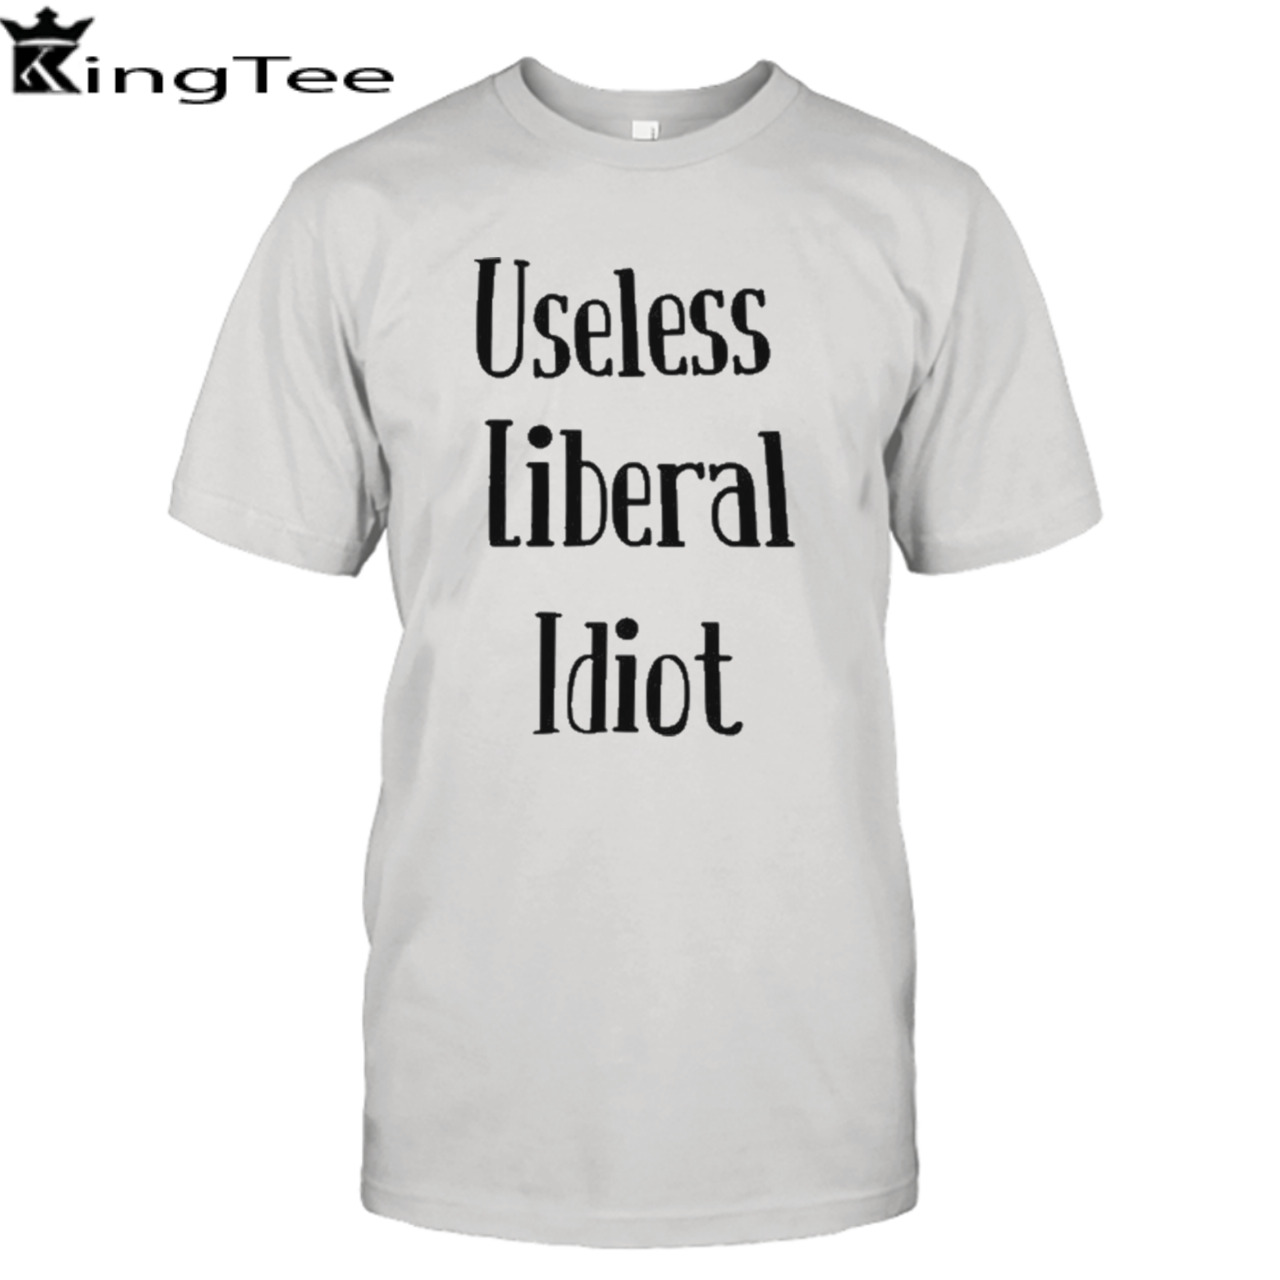 Useless Liberal Idiot T Shirt